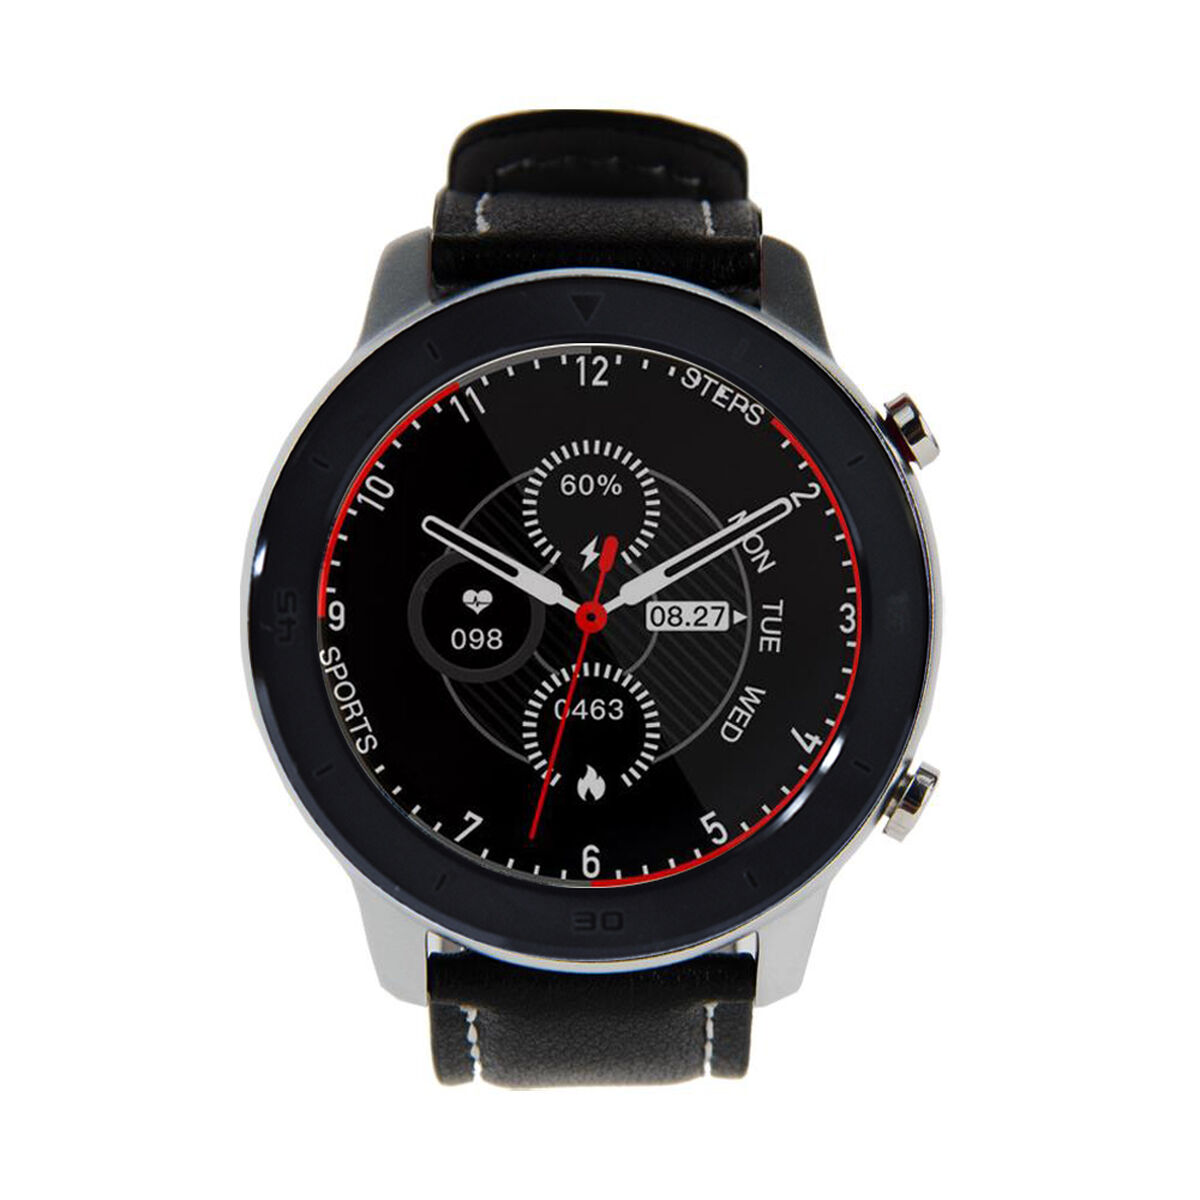 Smartwatch  Lhotse RD7 1,3" Negro